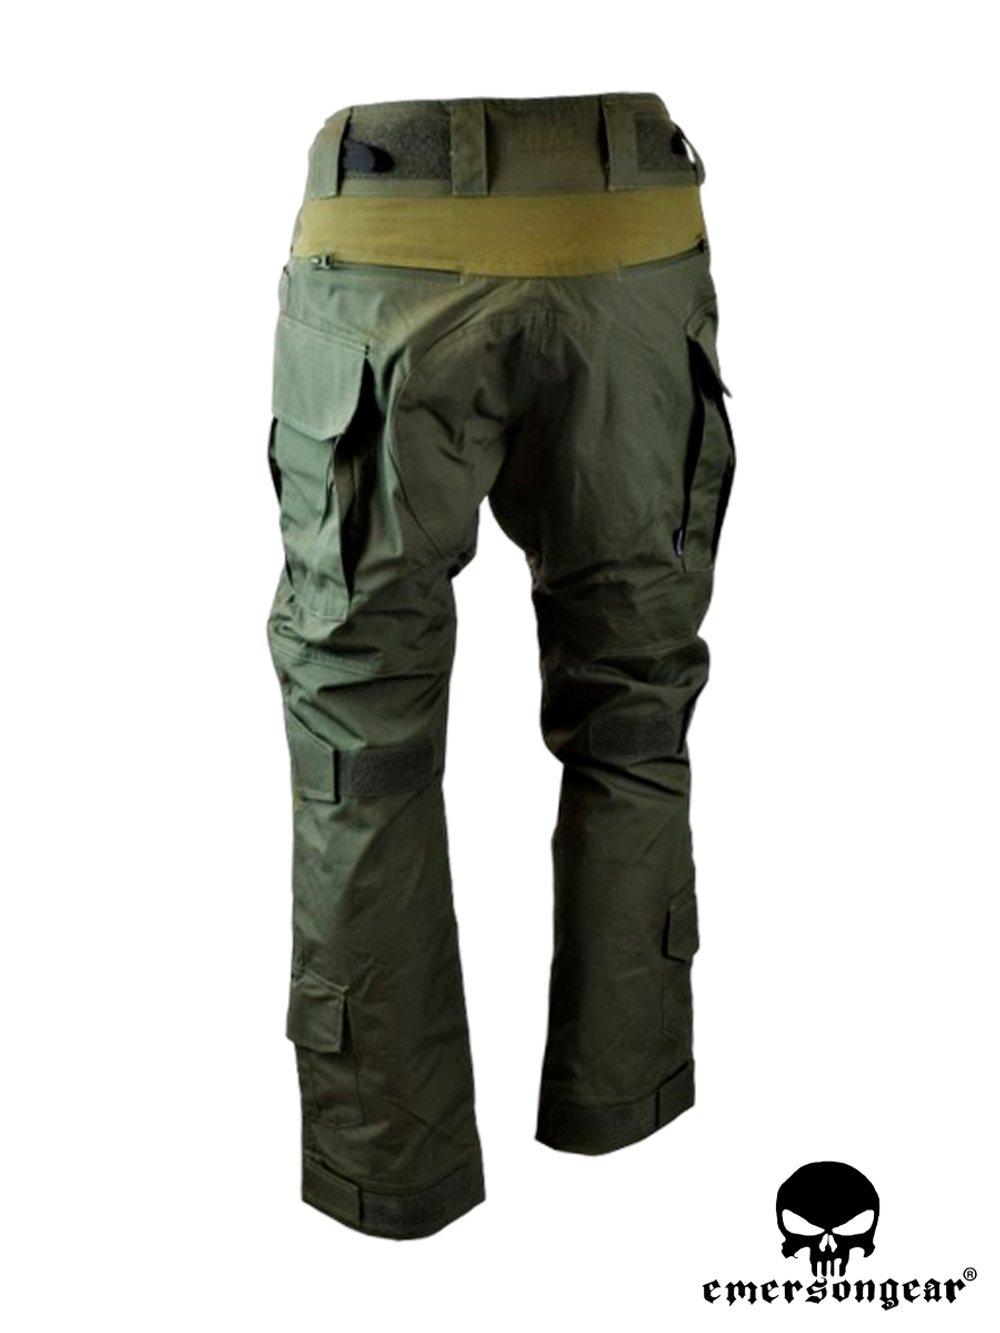 Брюки EmersonGear Blue Label G3 Tactical Pants (EM9319RG). Ranger Green